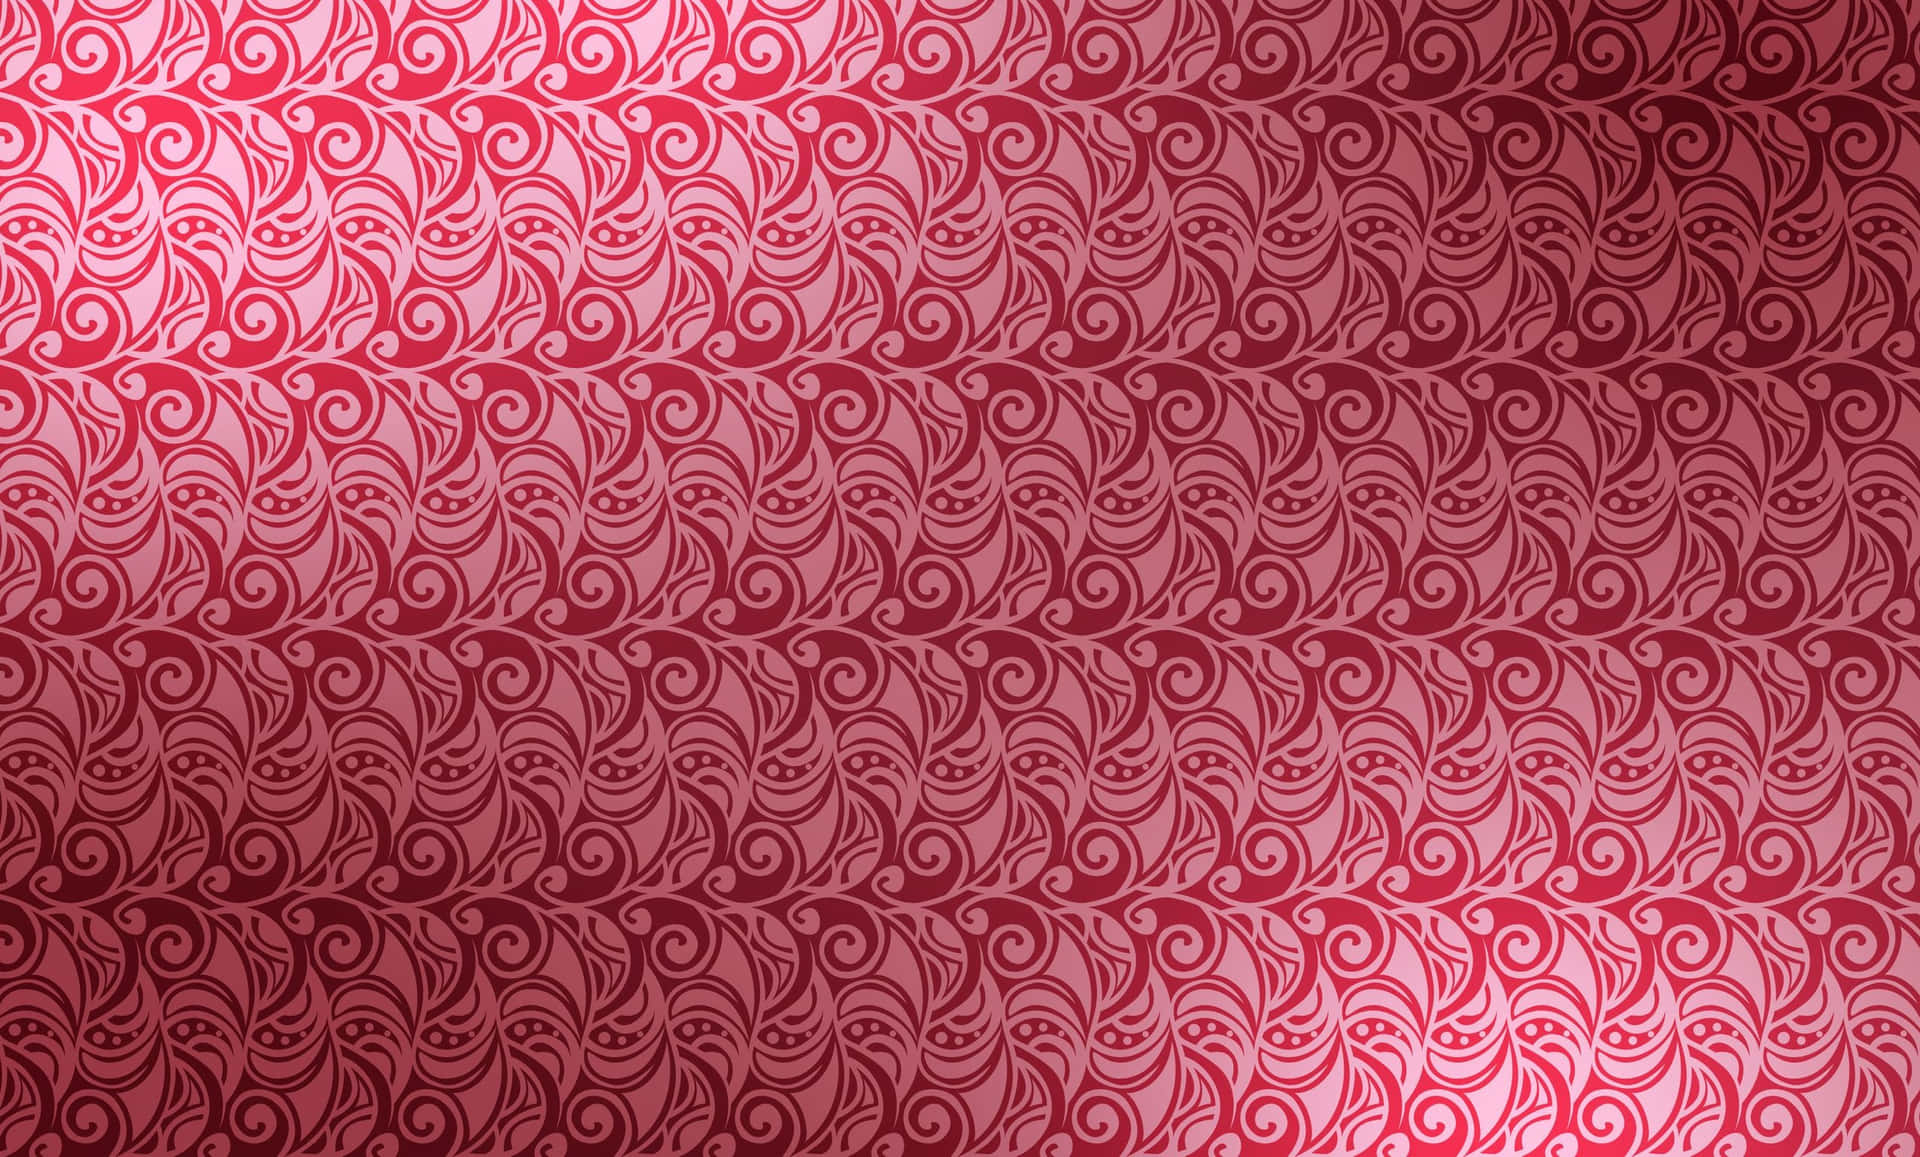 Unosfondo Per Computer O Cellulare Con Un Motivo A Spirale Rosso E Bianco